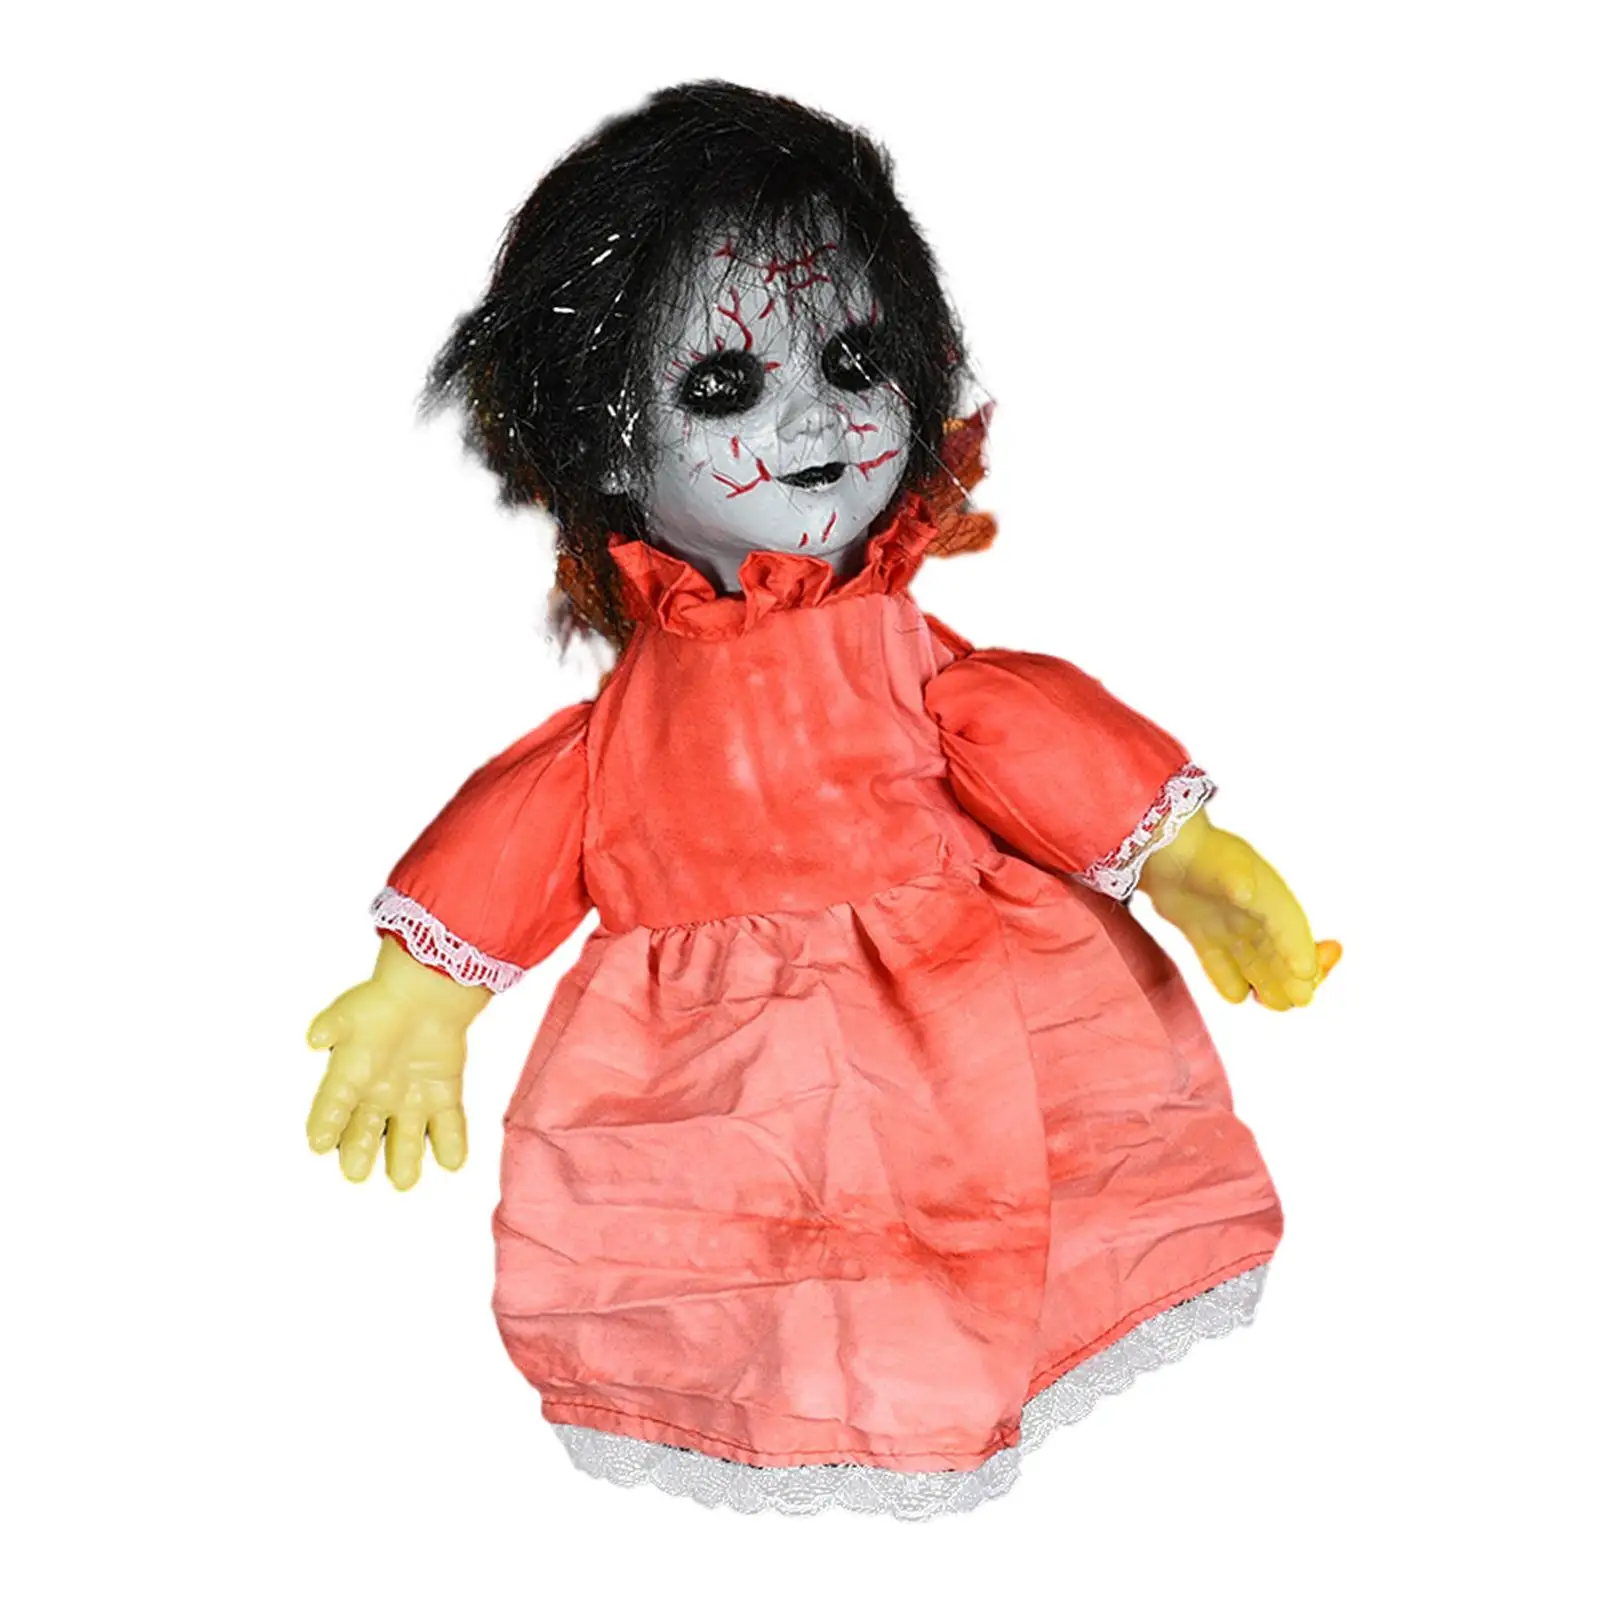 Halloween Baby Doll Lights up Eyes Holiday Decor Creepy Halloween Dolls Haunted Doll for Indoor Outdoor Haunted House Halloween